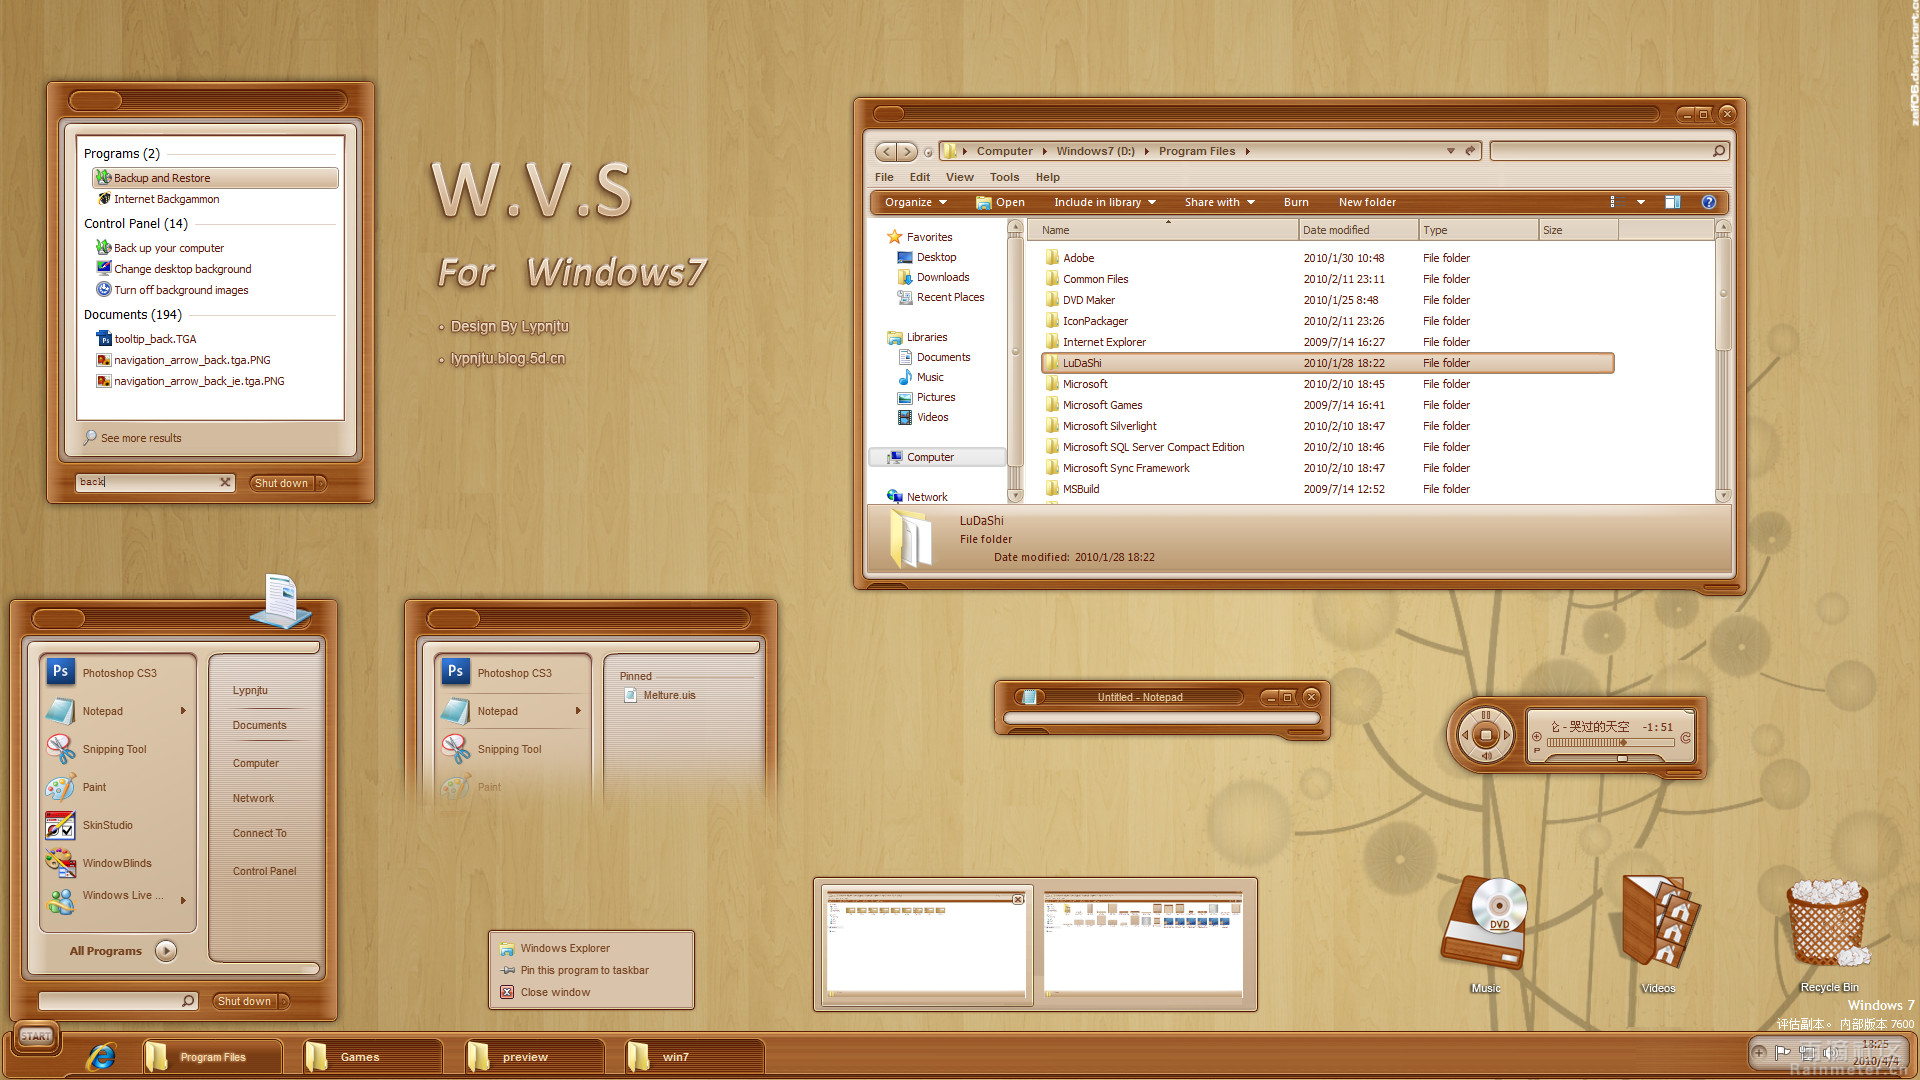 W_V_S_for_windows7_by_lypnjtu.jpg